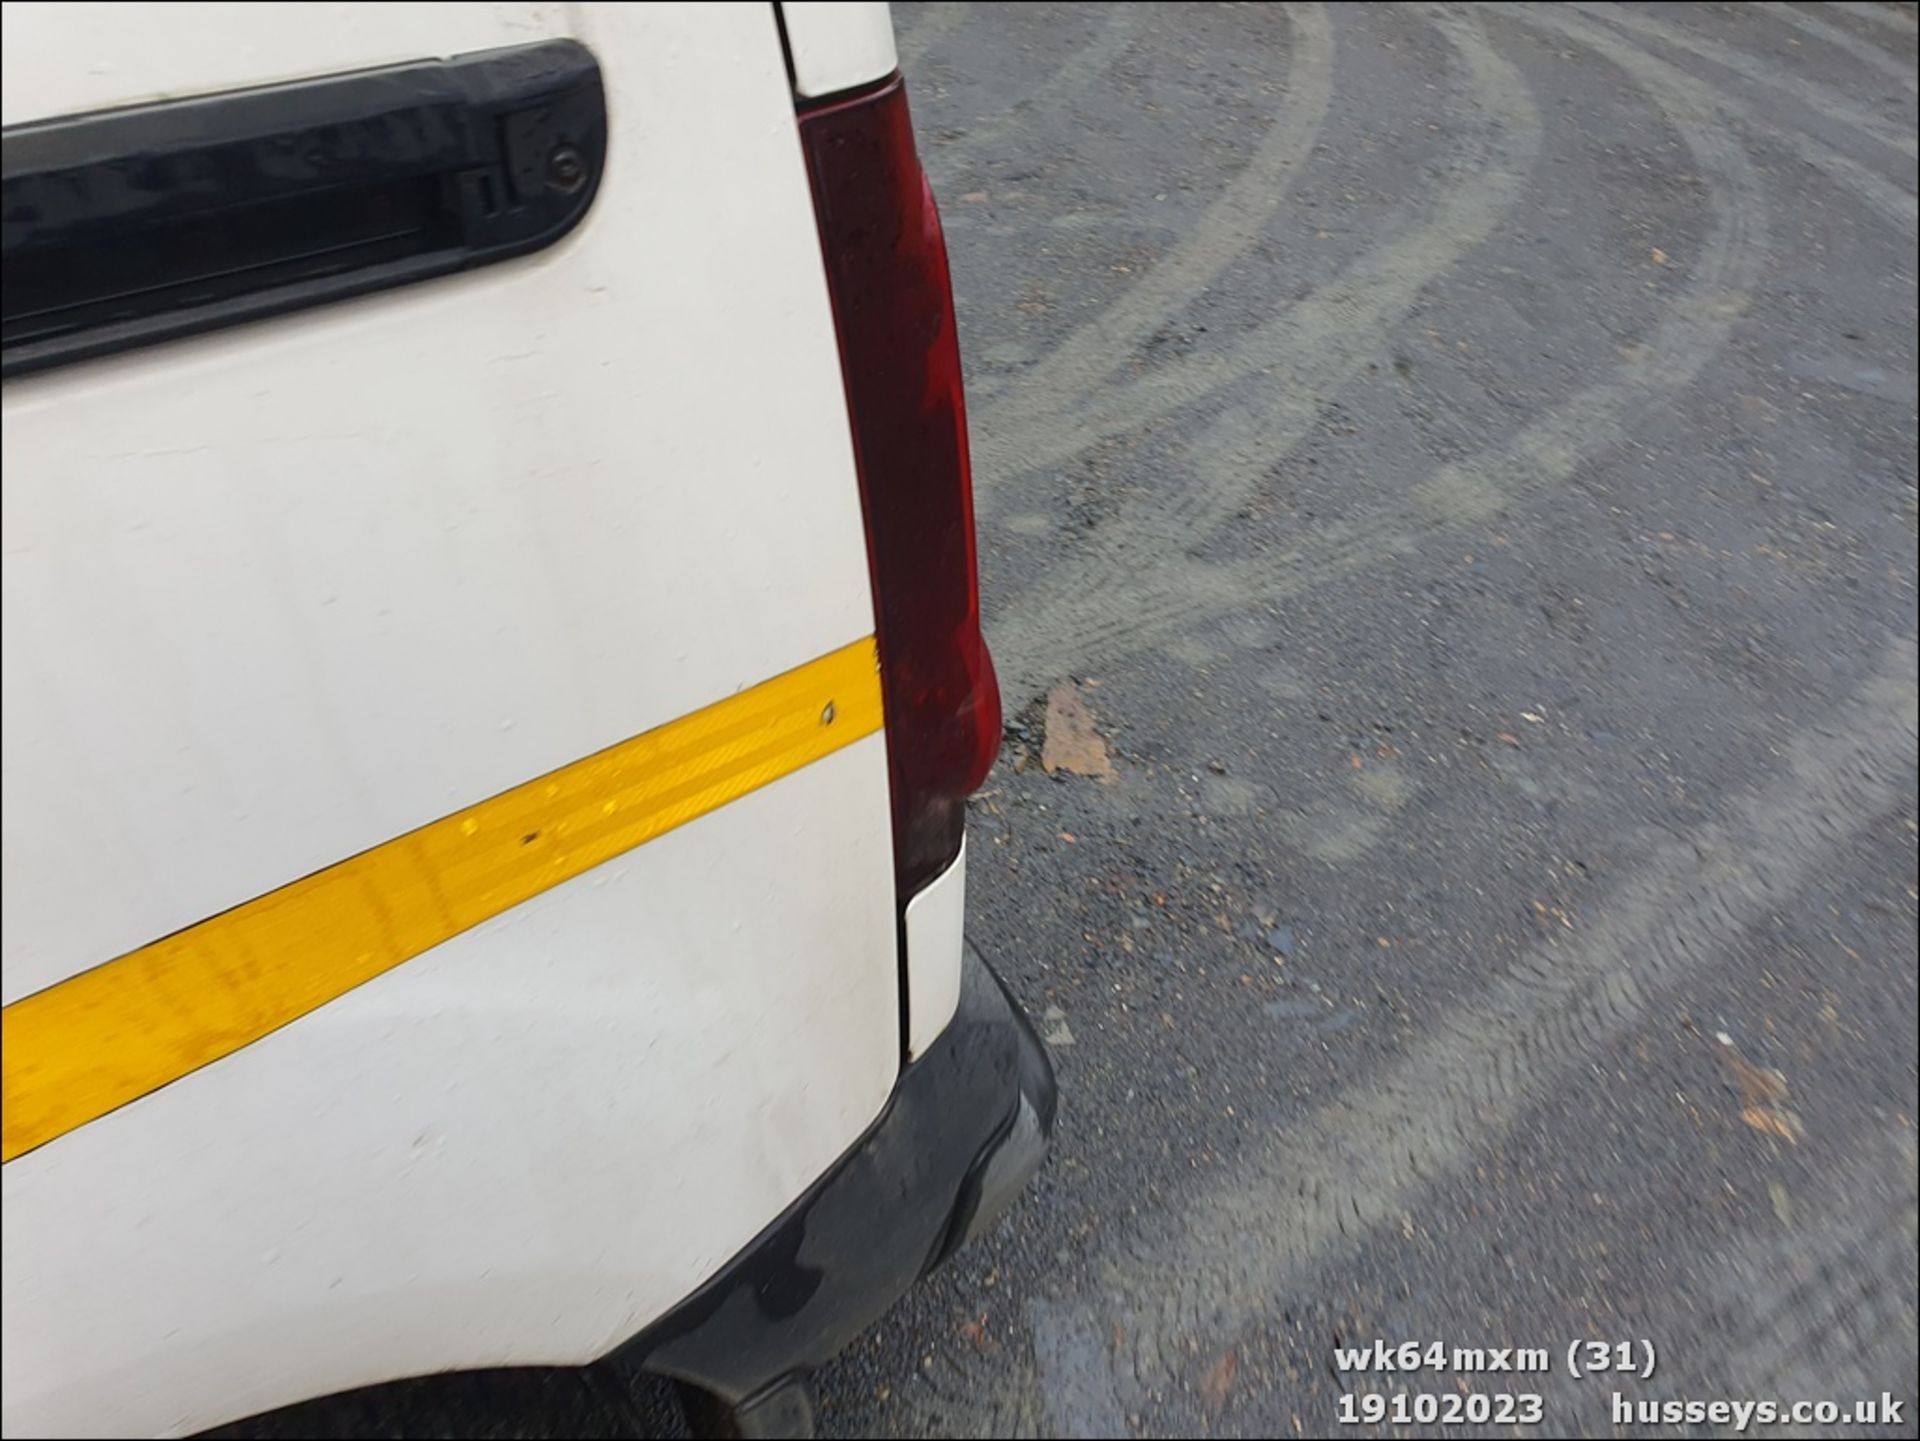 14/64 PEUGEOT PARTNER 850 SE L1 HDI - 1560cc 5dr Van (White, 72k) - Image 32 of 40